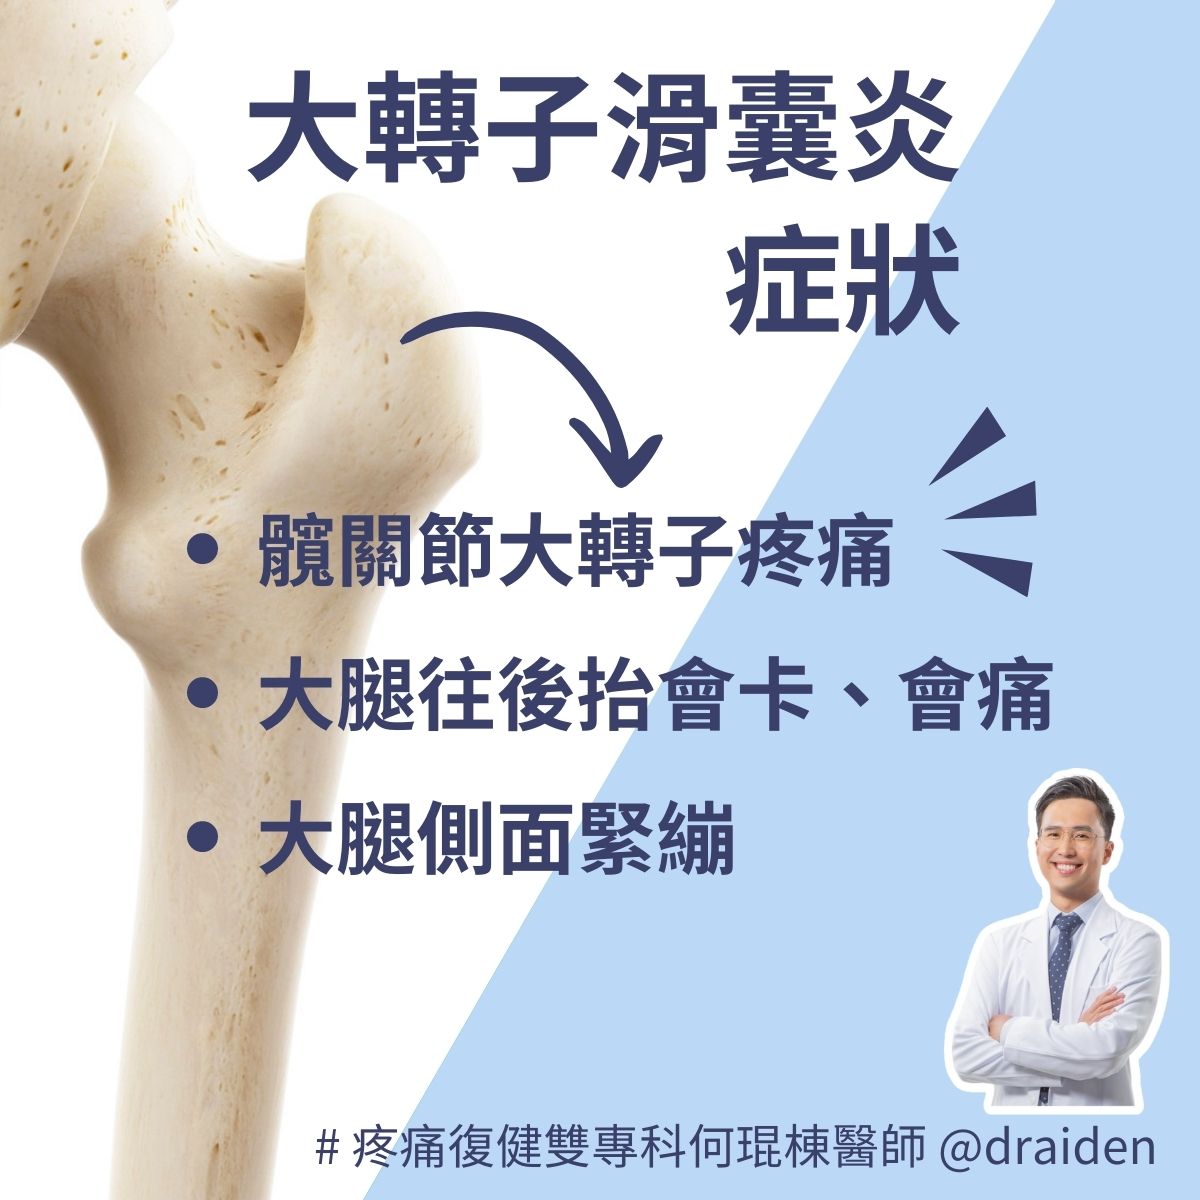 大轉子滑囊炎：症狀包含髖關節大轉子疼痛、大腿側面緊繃、走路會屁股痛